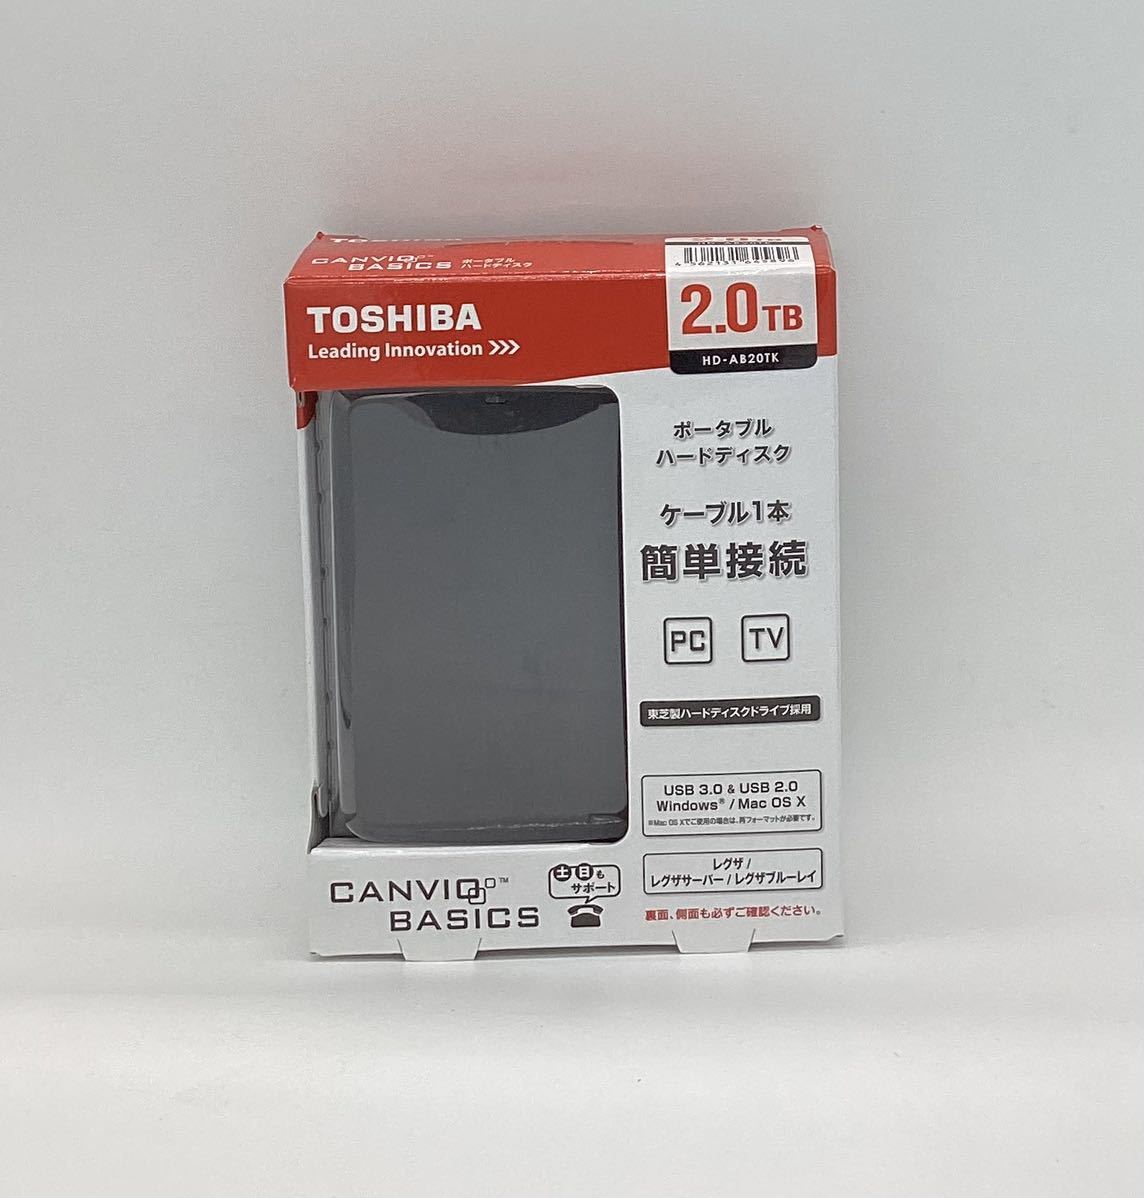 【 新品 】 東芝 HD-AB20TKブラック BASICS CANVIO 2TB 2.5インチポータブルハードディスク TOSHIBA 1TB～